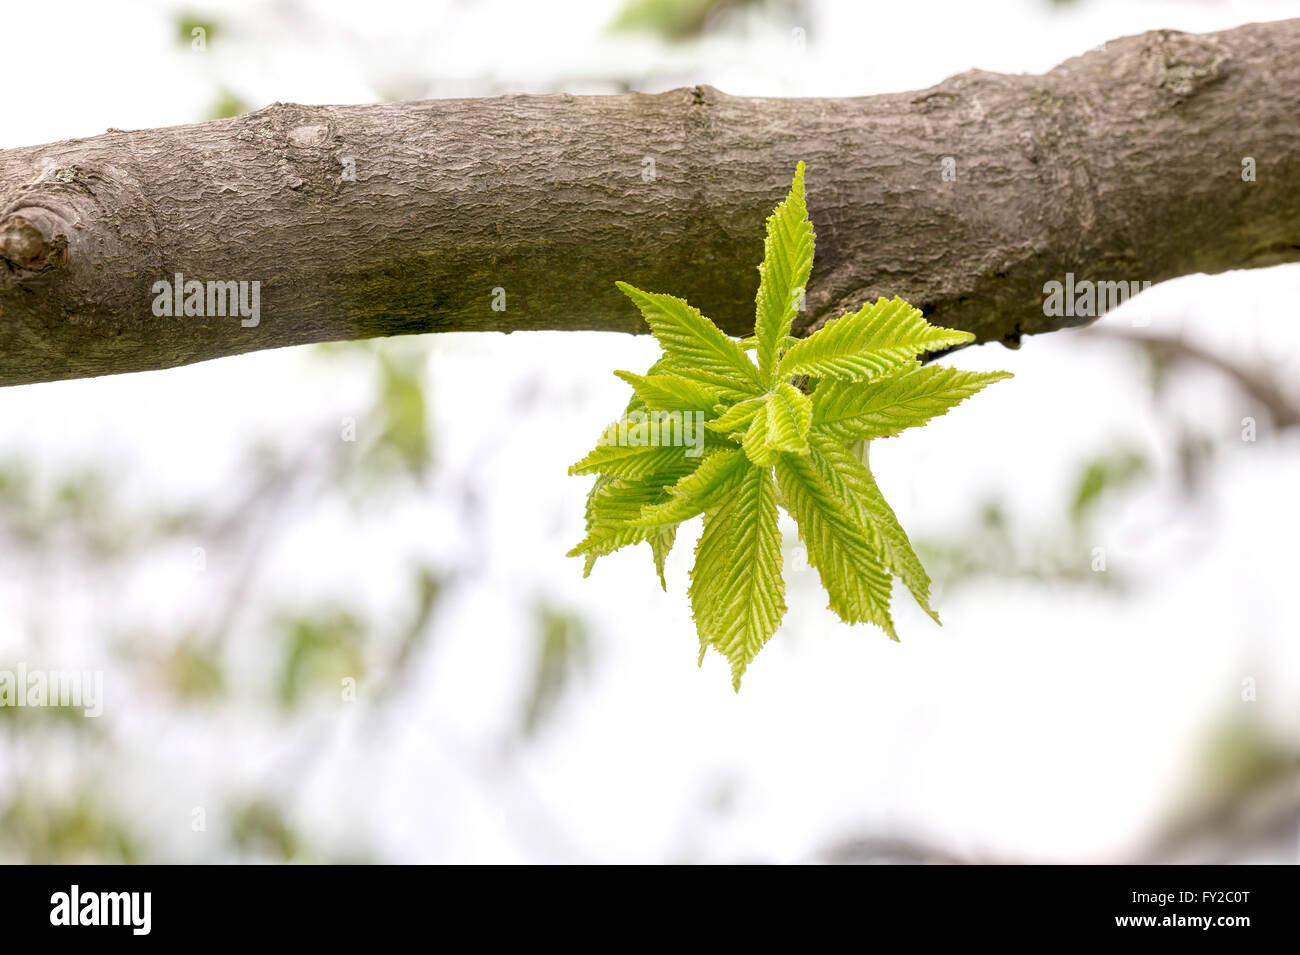 European or common hornbeam (Carpinus betulus) leaves under a strong spring light Stock Photo